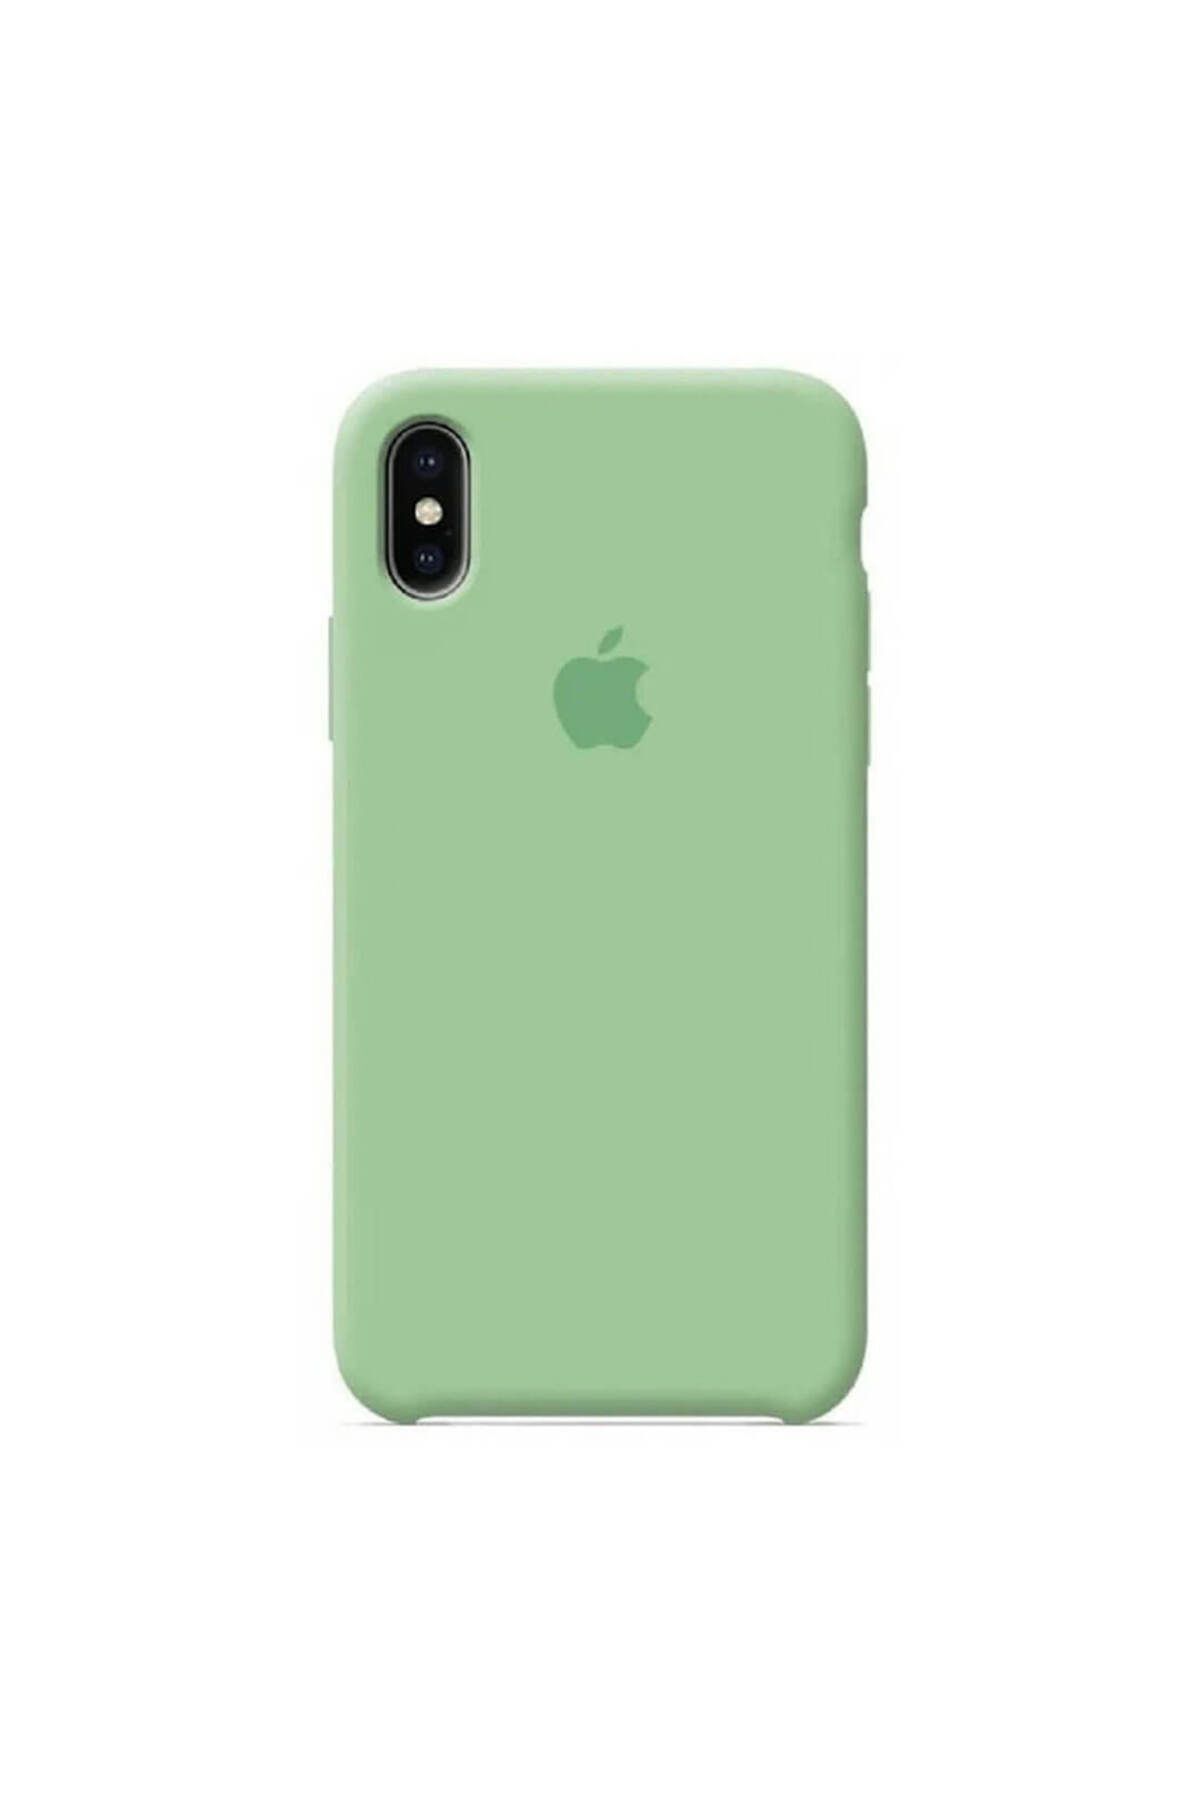 Stendhal iPhone X ile uyumlu Kılıf A+ Deluxe Class (Limited Stock) - Fıstık Yeşili